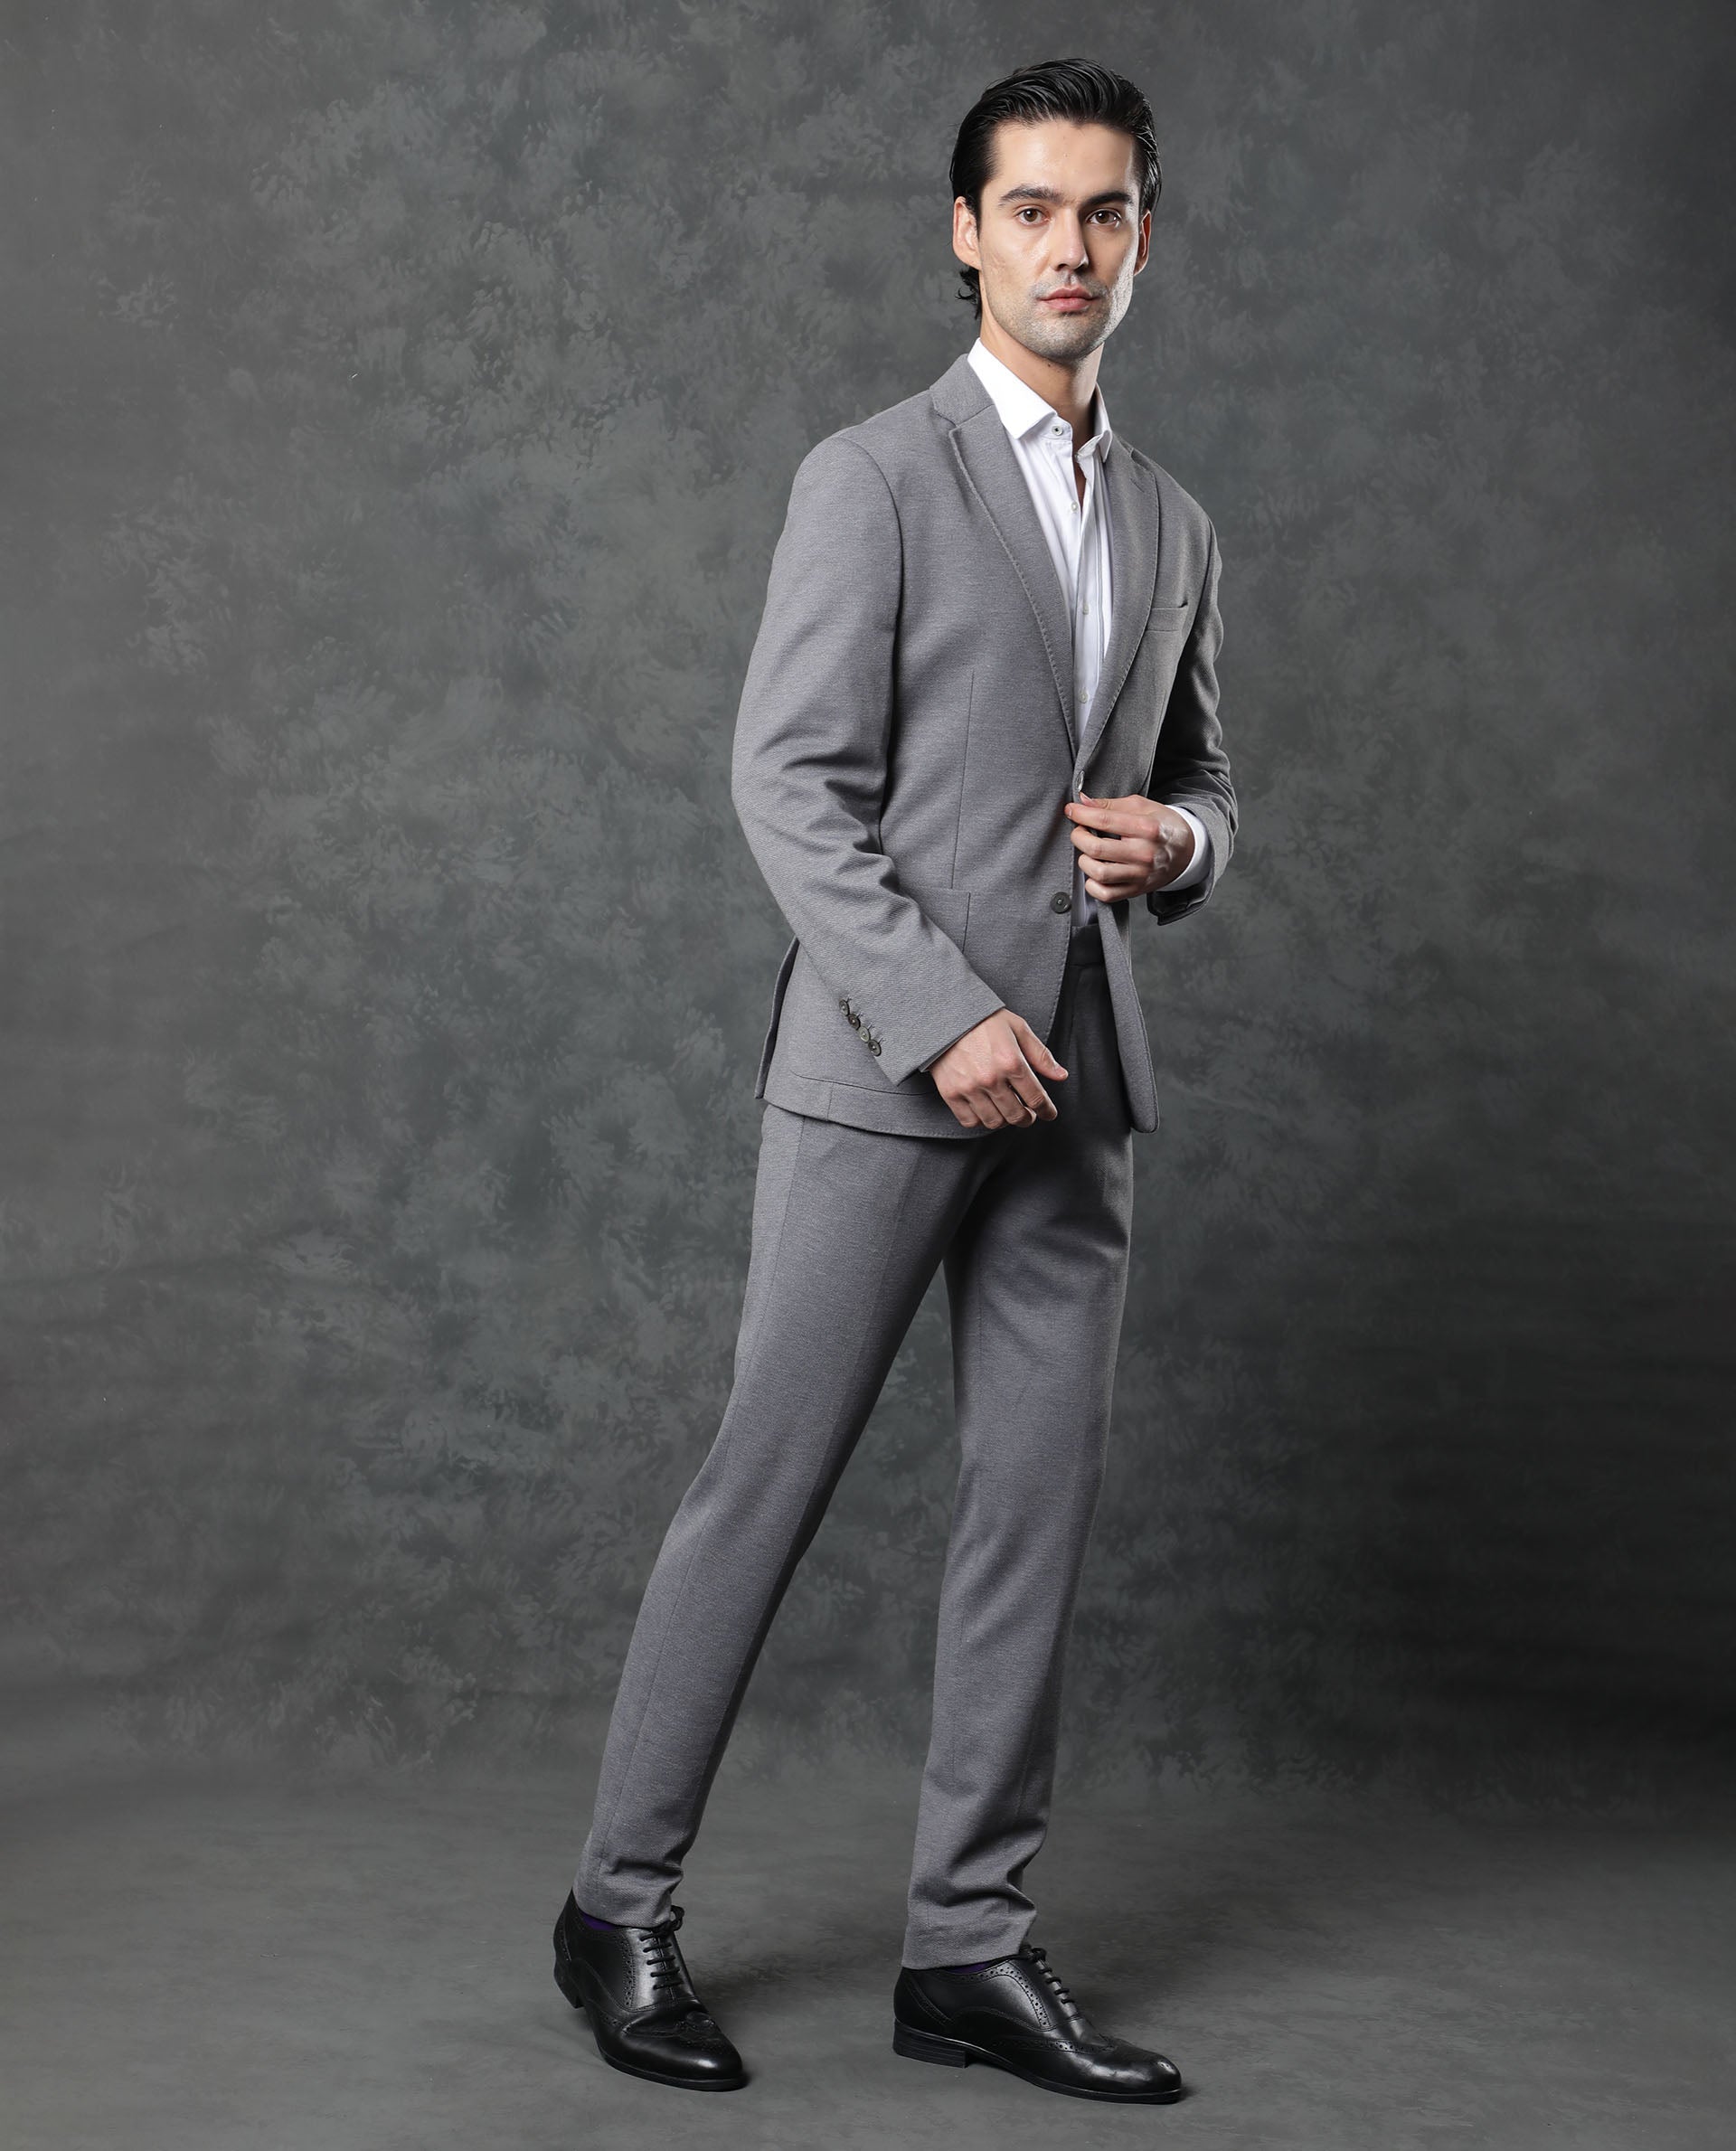 Gray Suits - Men's Gray Suits